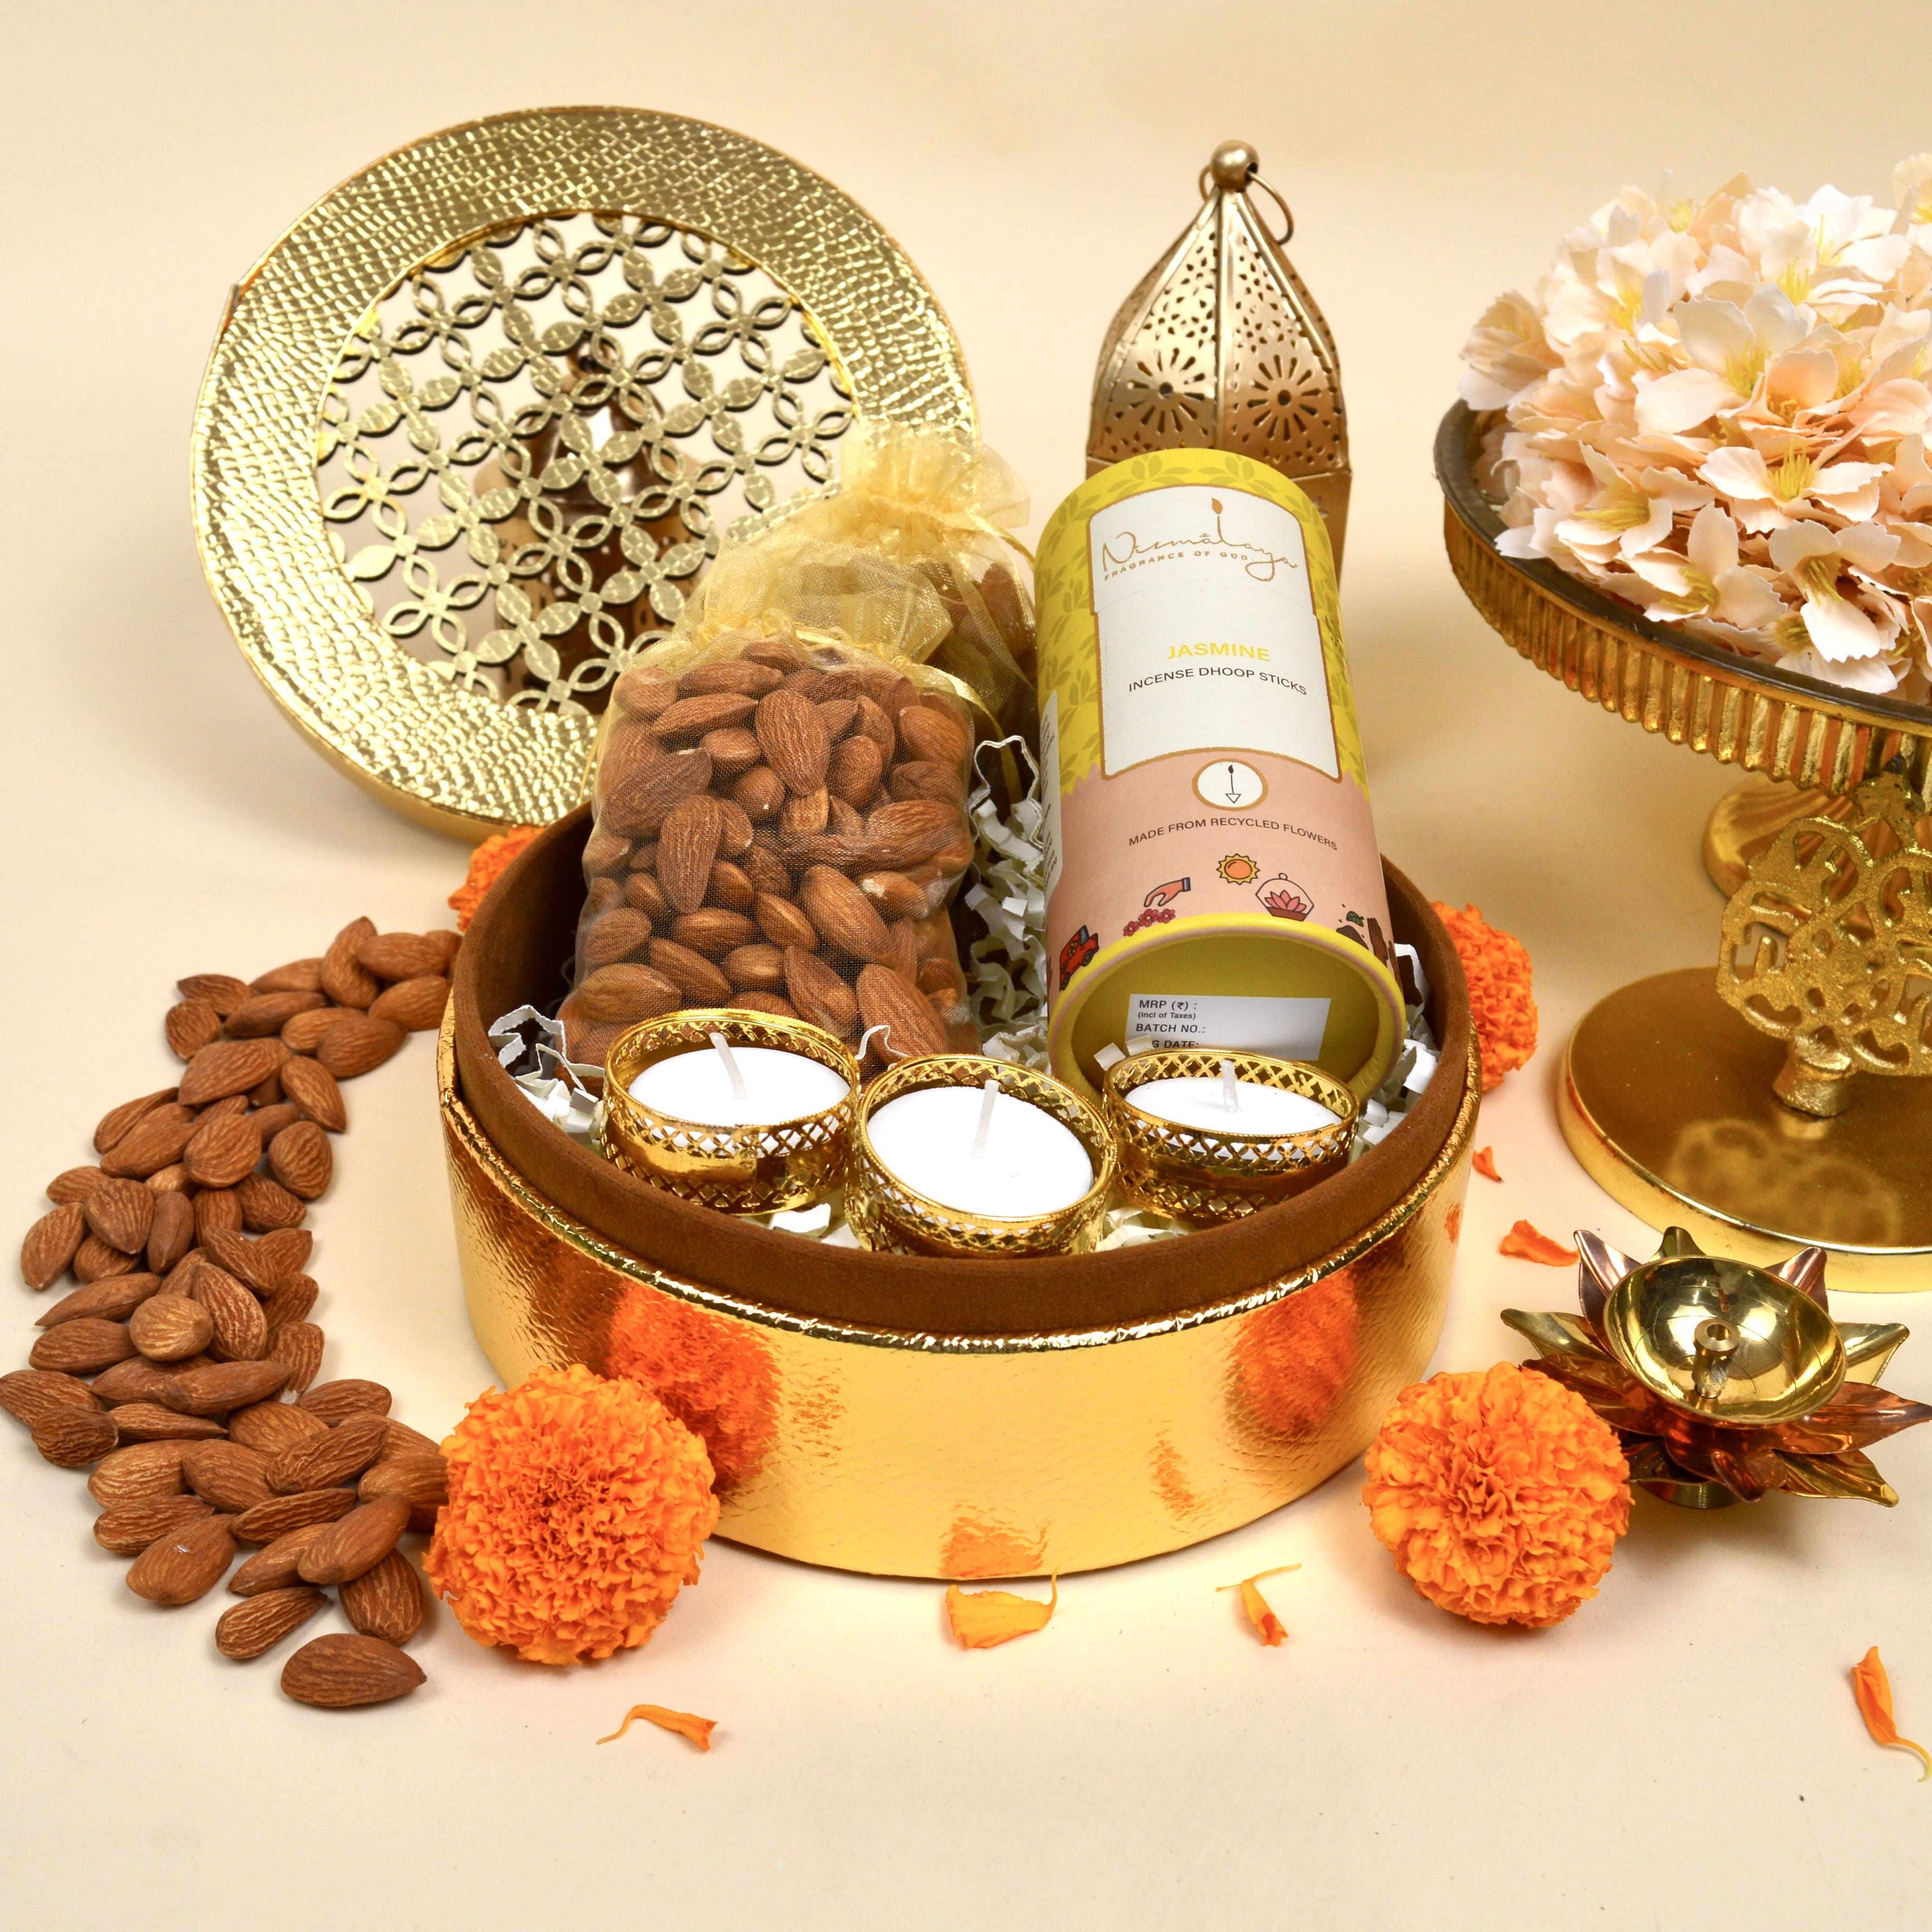 Statement Diwali Hamper: Gift/Send Diwali Gifts Online JVS1188225 |IGP.com